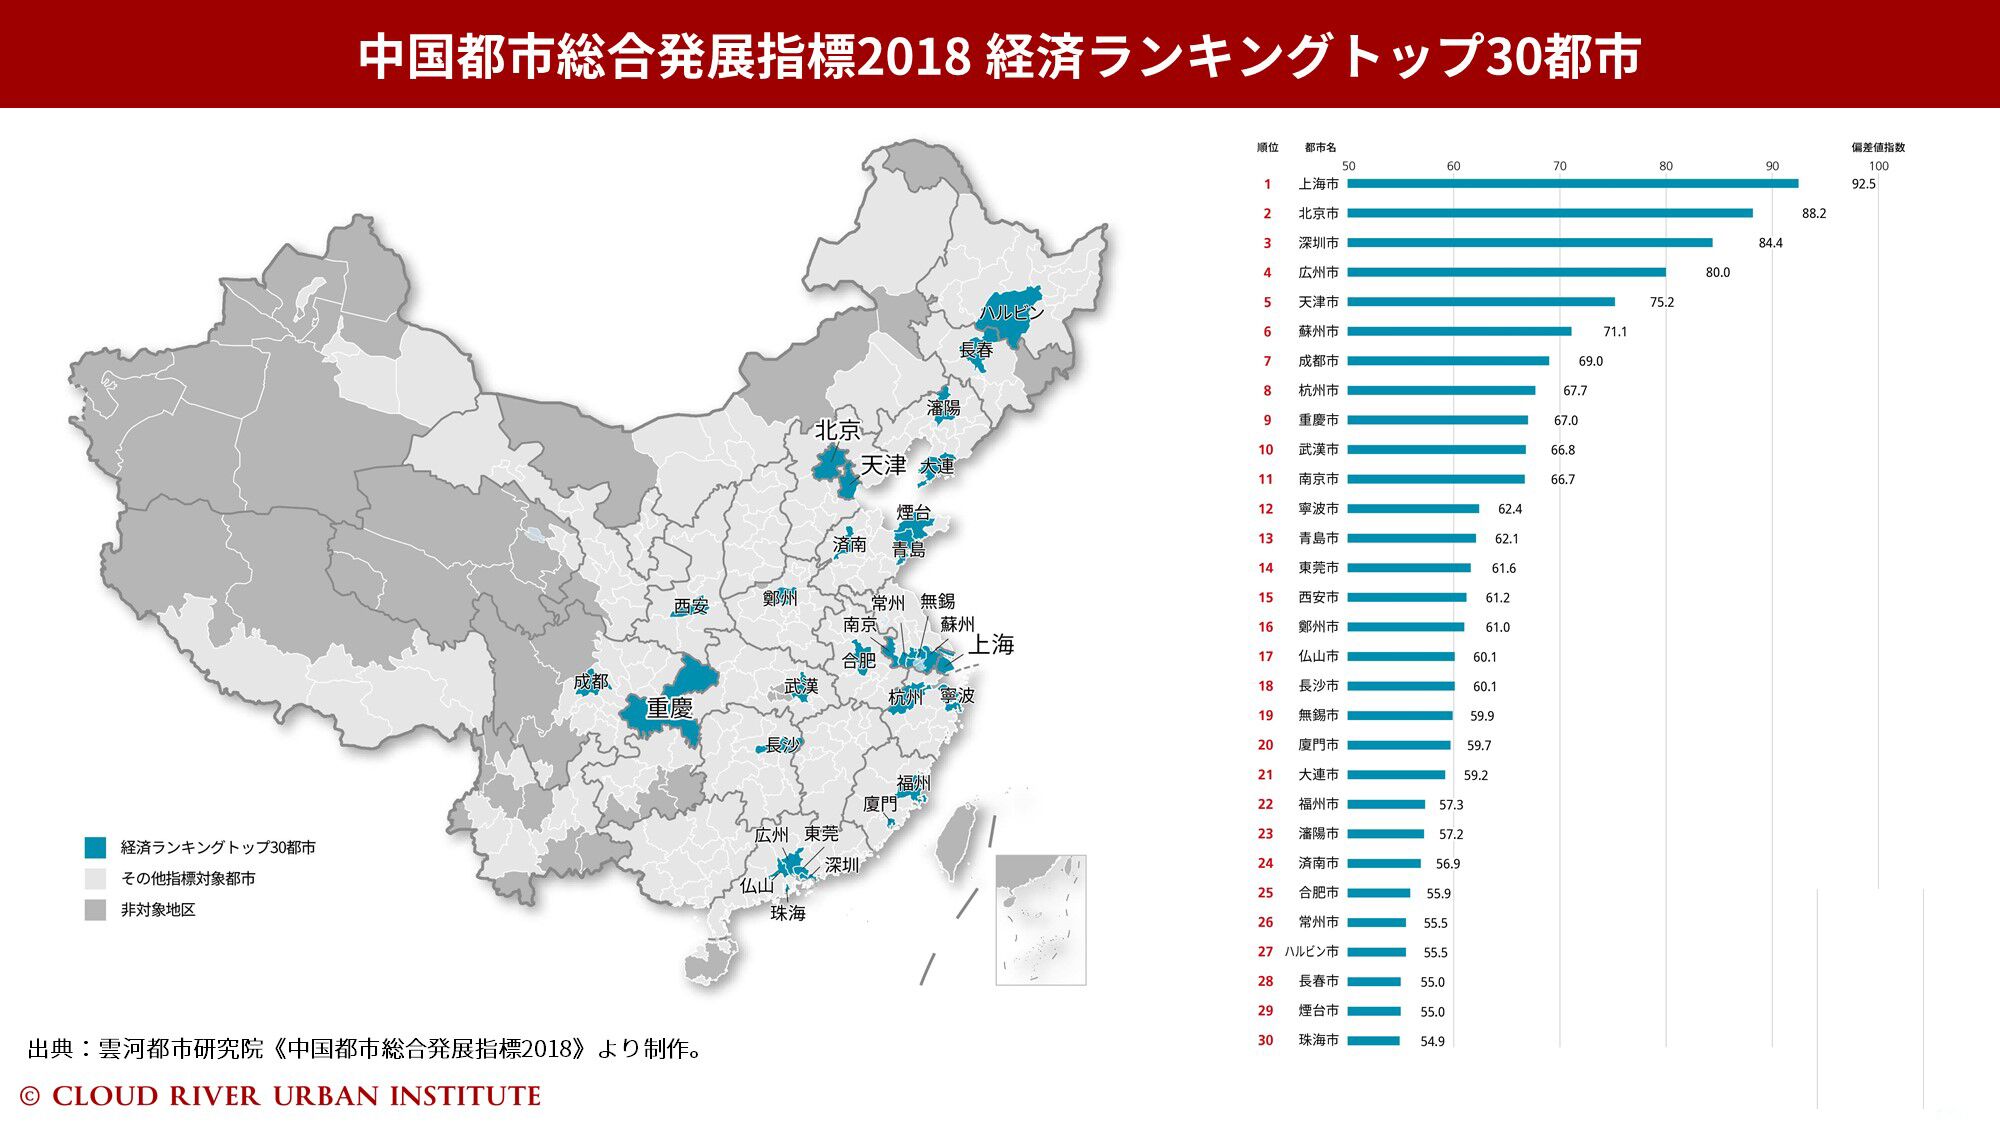 中国都市総合発展指標2018経済ランキング 